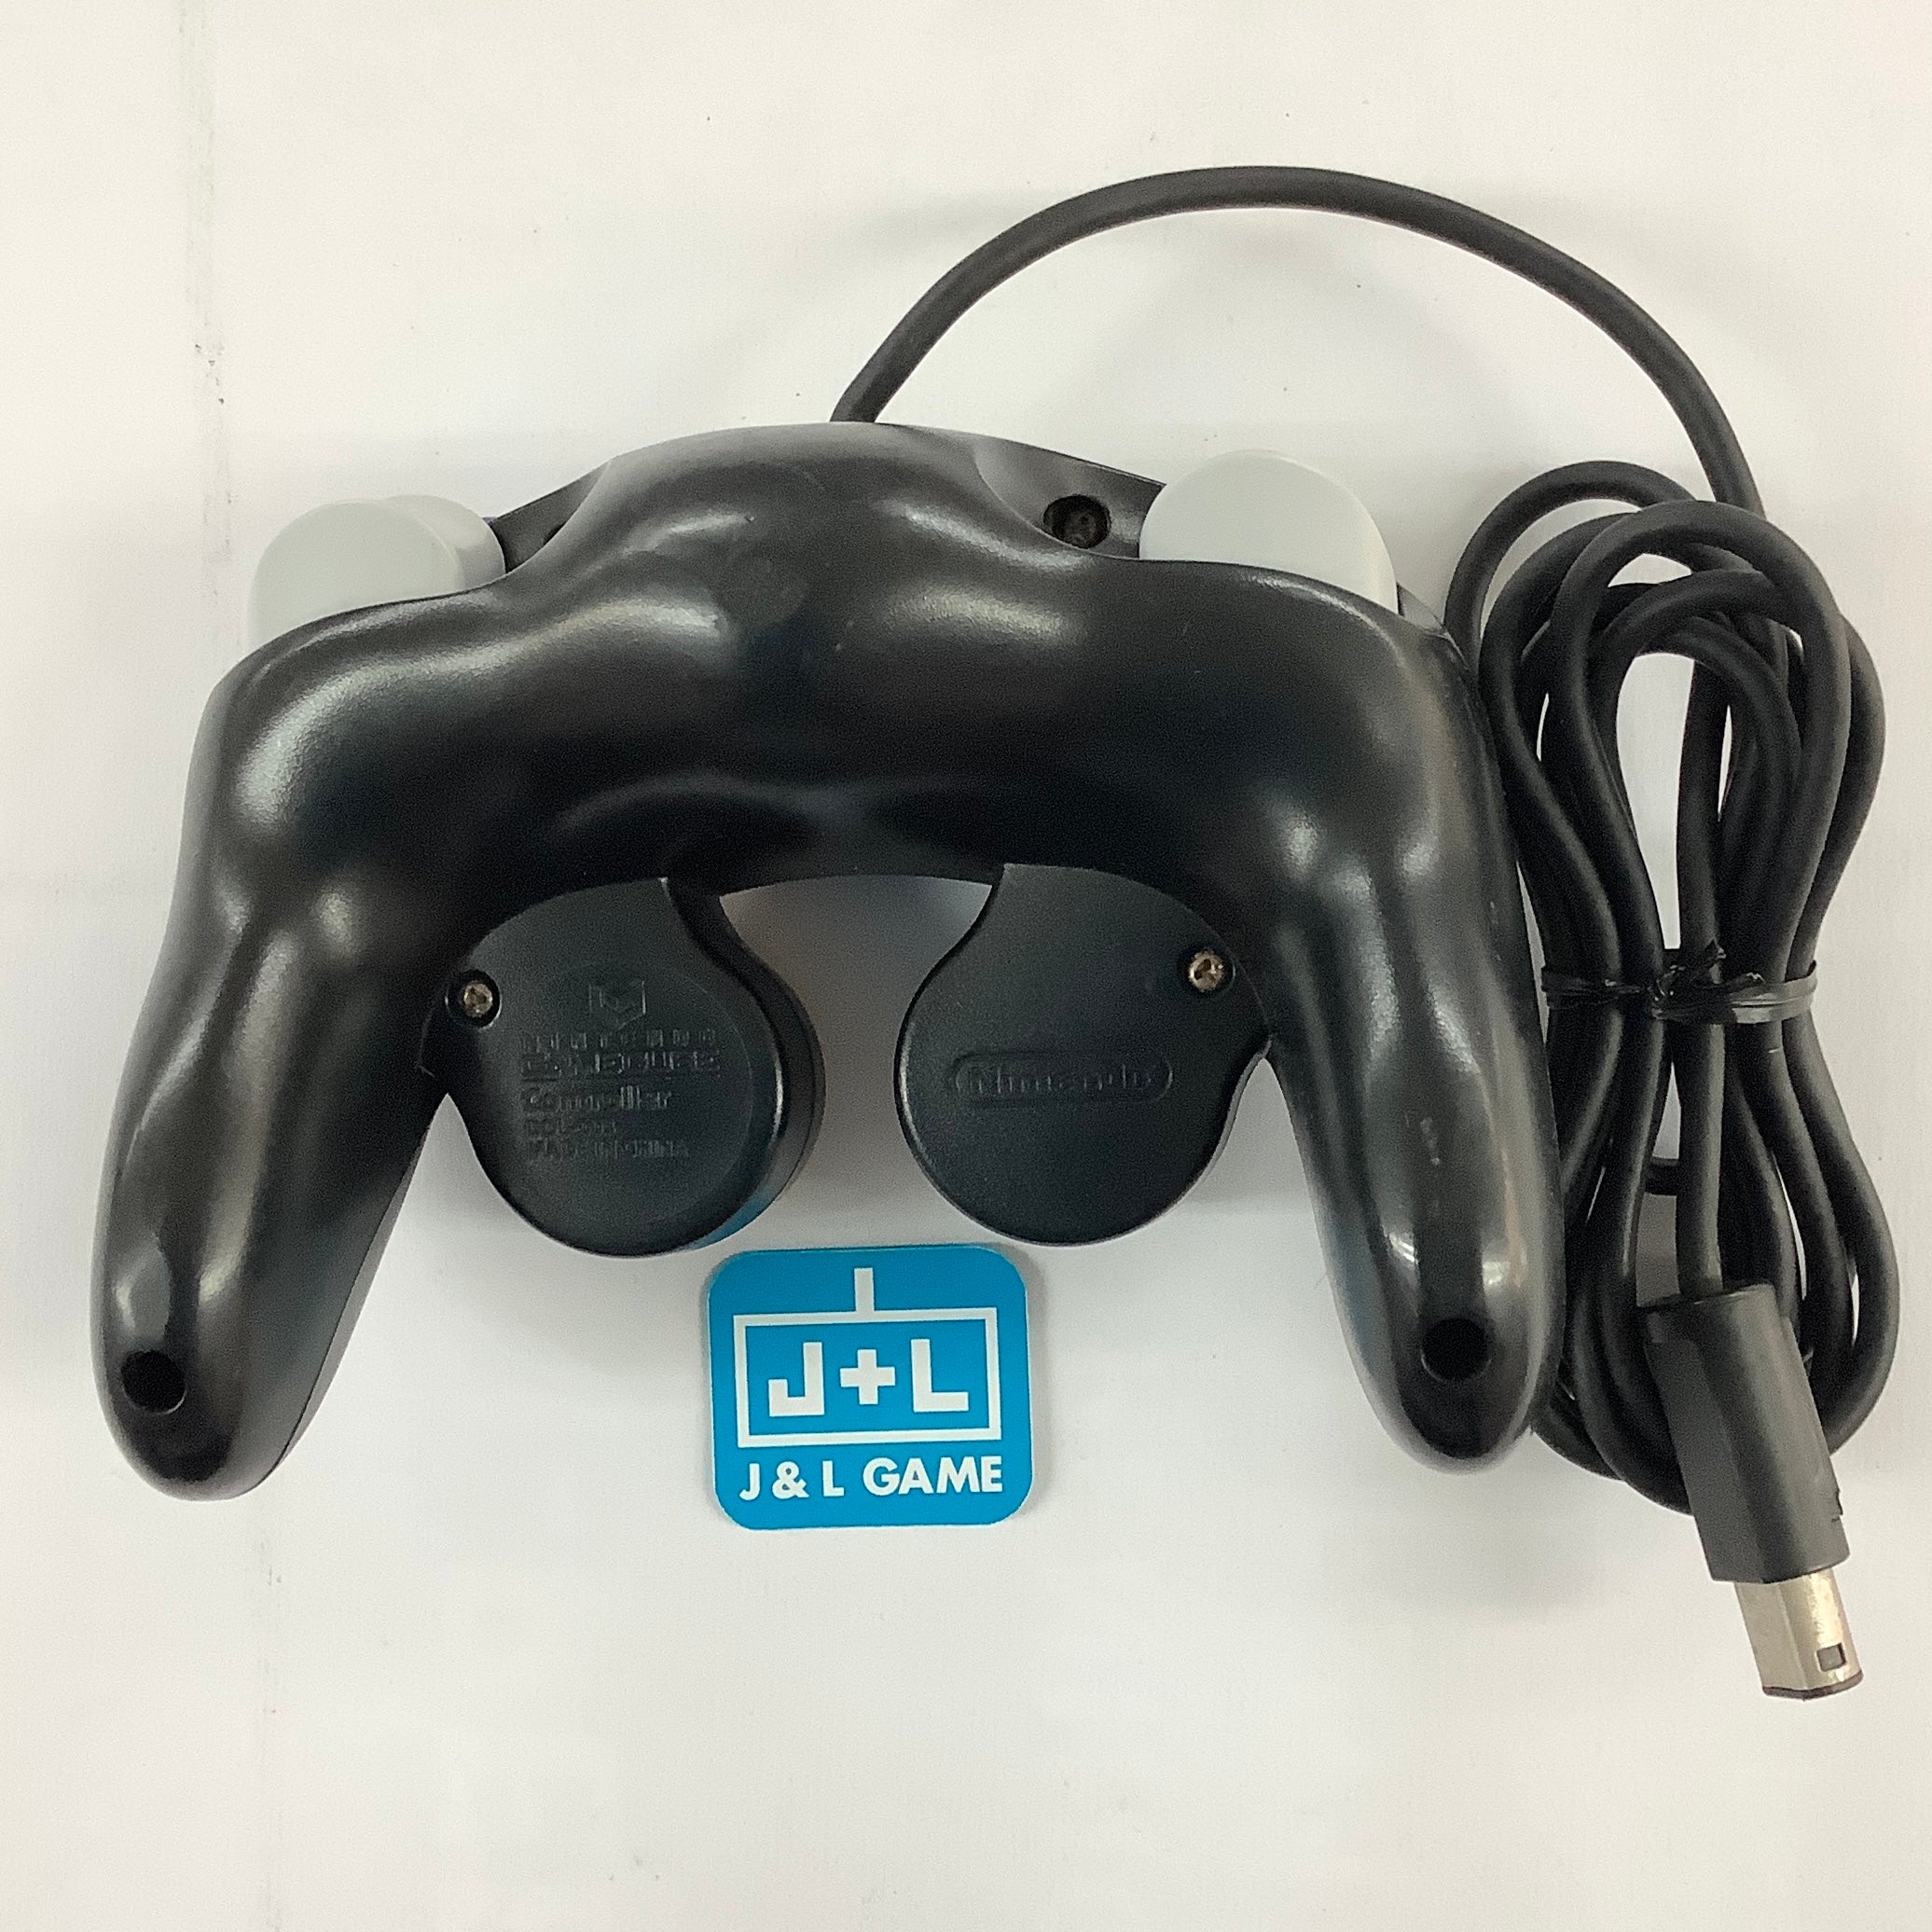 Nintendo GameCube Controller (Black) - (GC) GameCube [Pre-Owned] Accessories Nintendo   